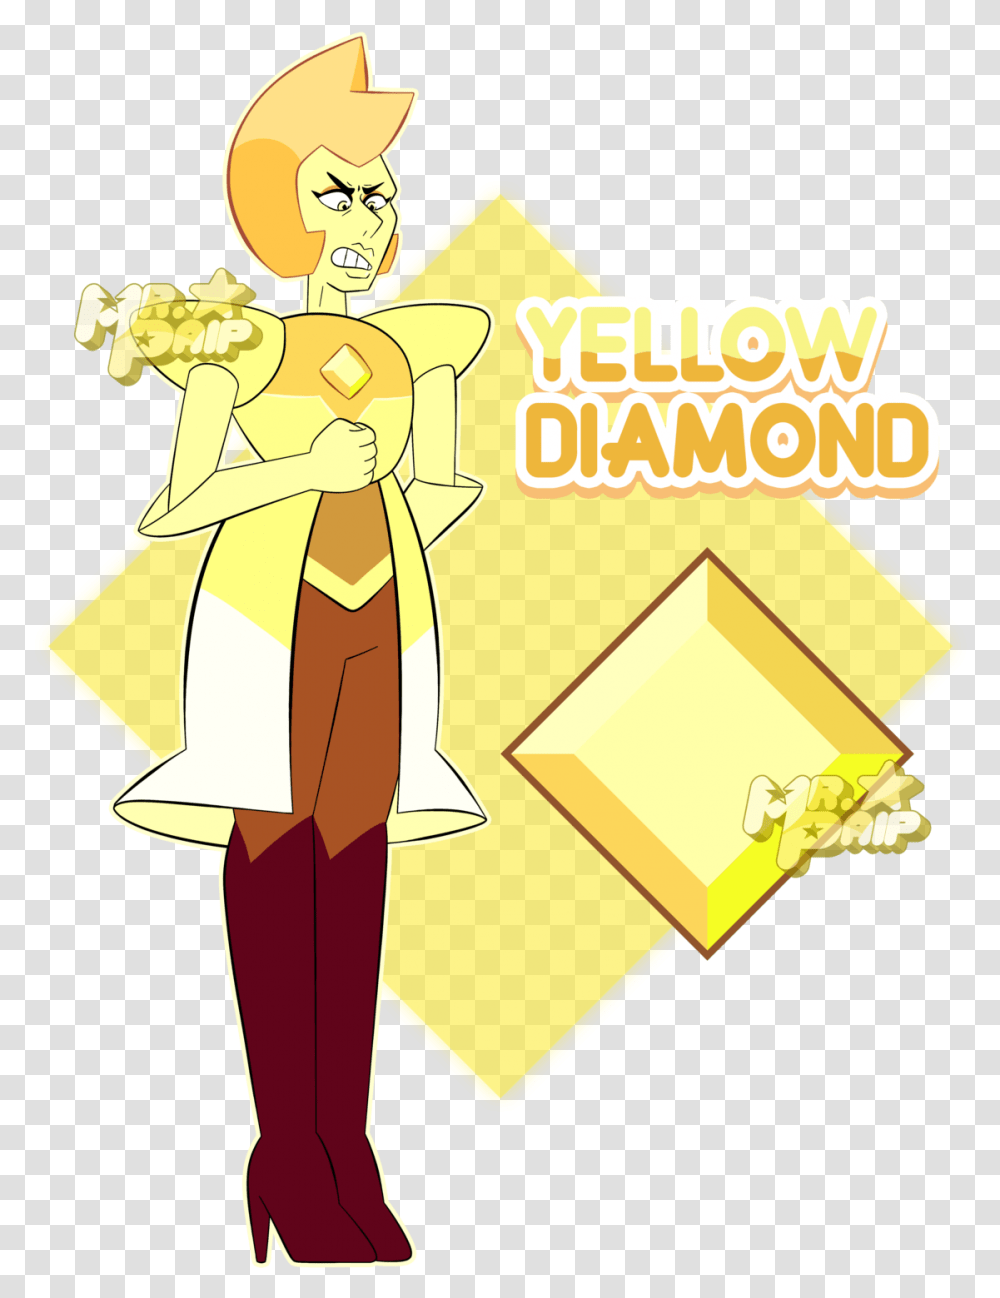 Steven Universe Yellow Diamond Colors Download Yellow Diamond Color Palette, Female, Coat Transparent Png